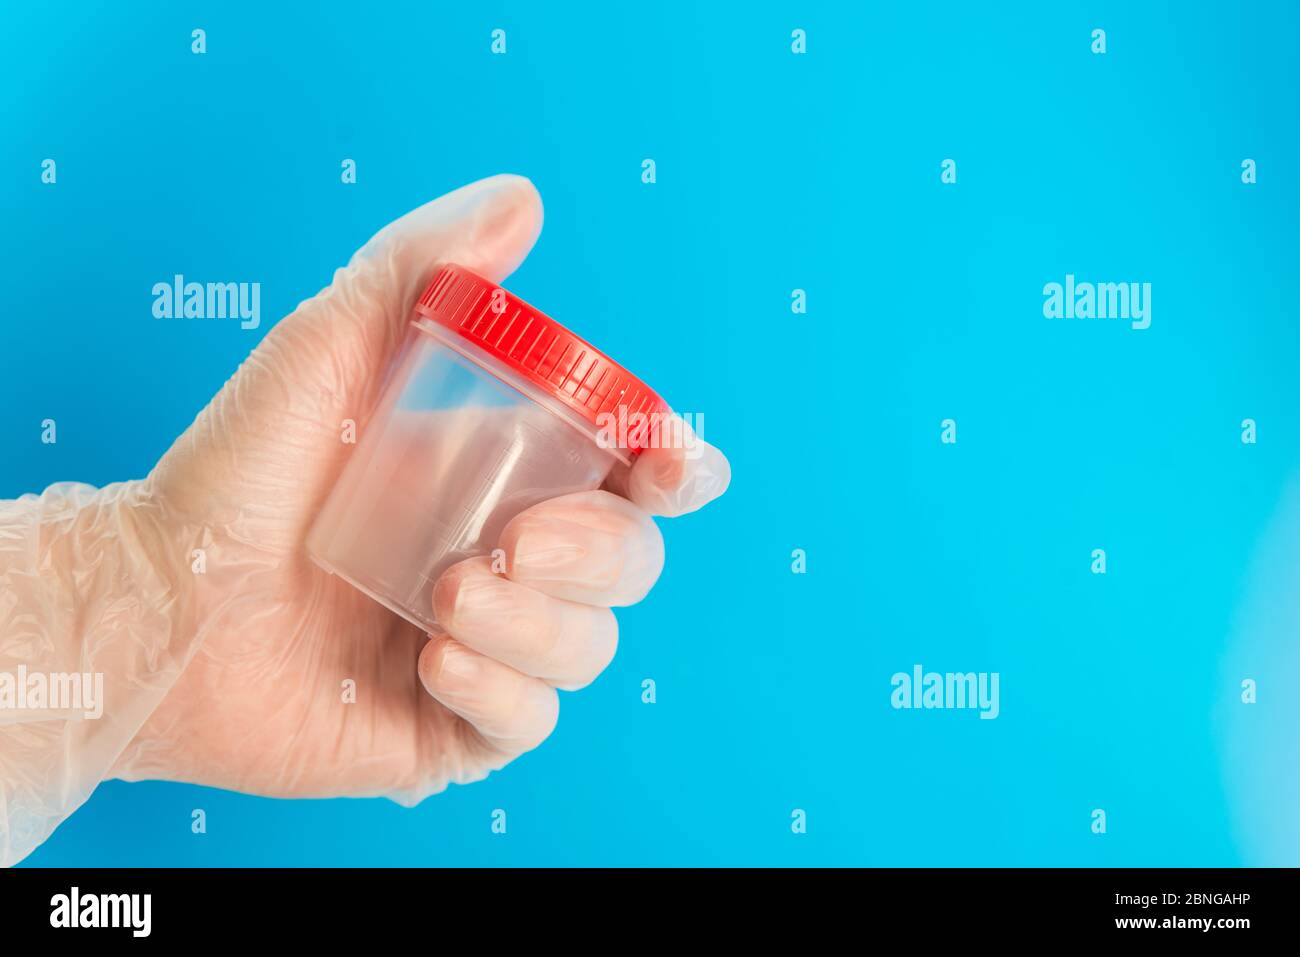 Arzthand im medizinischen Handschuh hält einen leeren Plastikbehälter für Tests Stockfoto